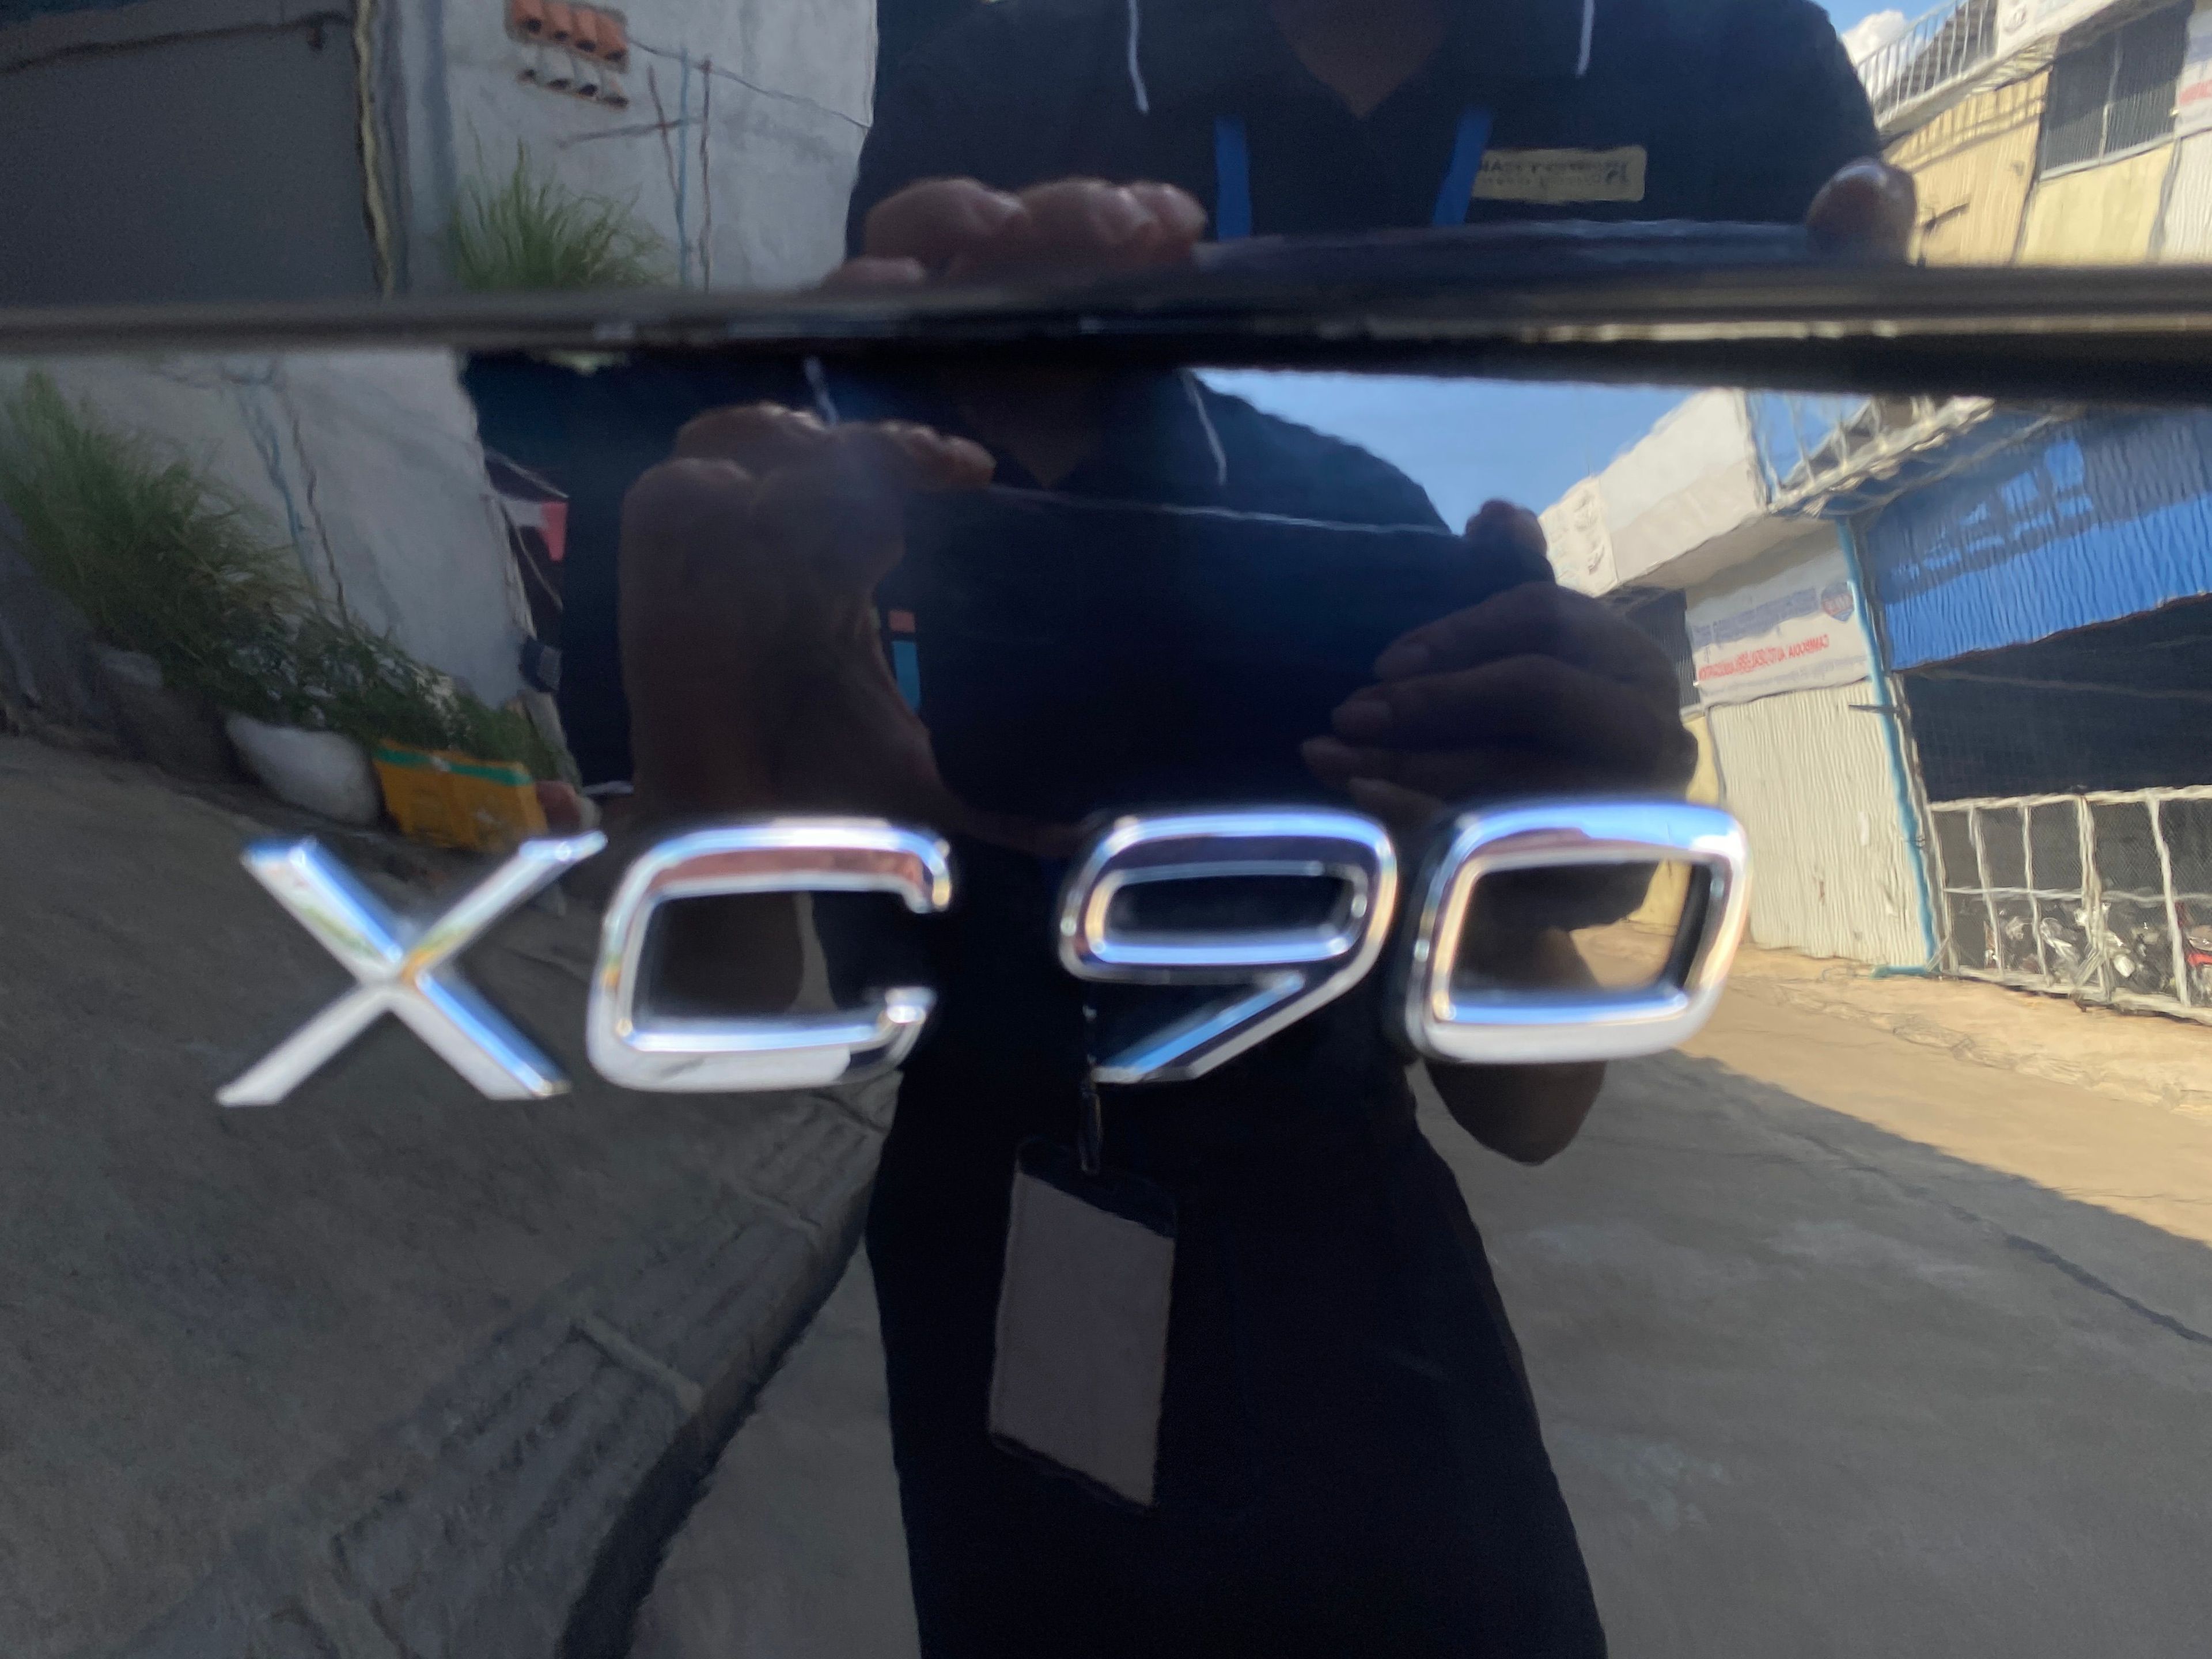 Volvo XC90 2016